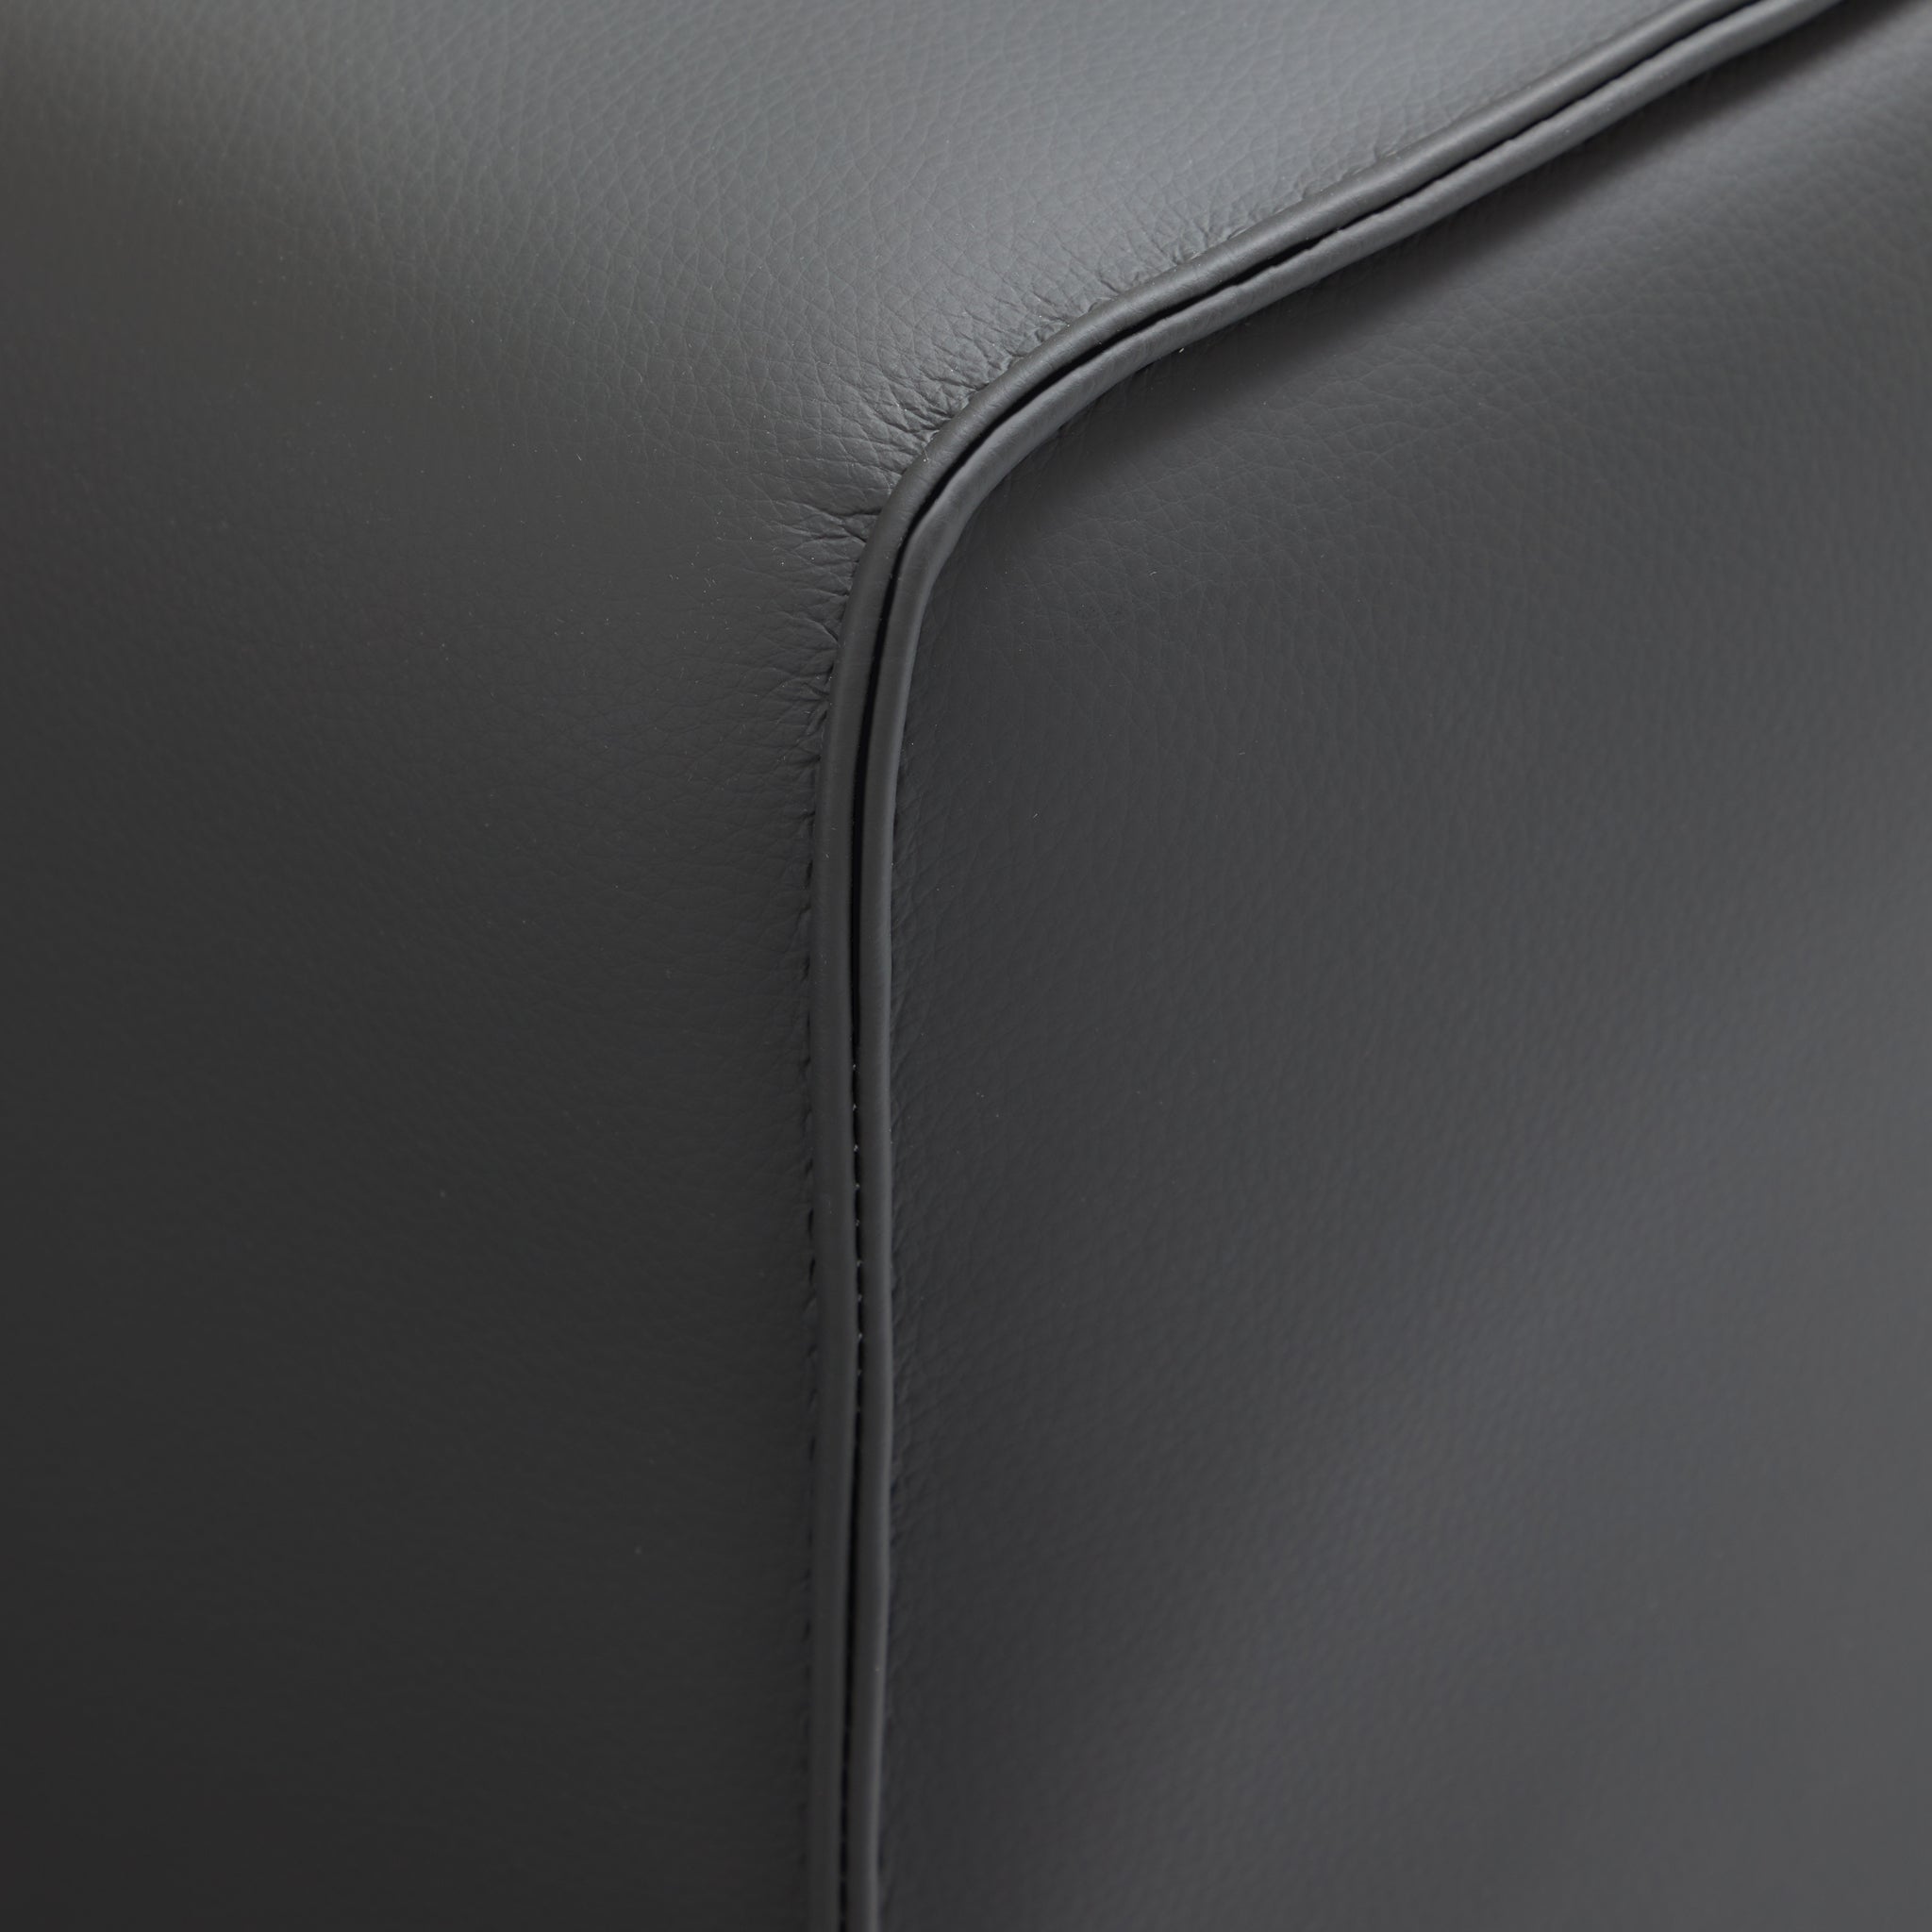 Domus Modular Khaki Leather Sofa